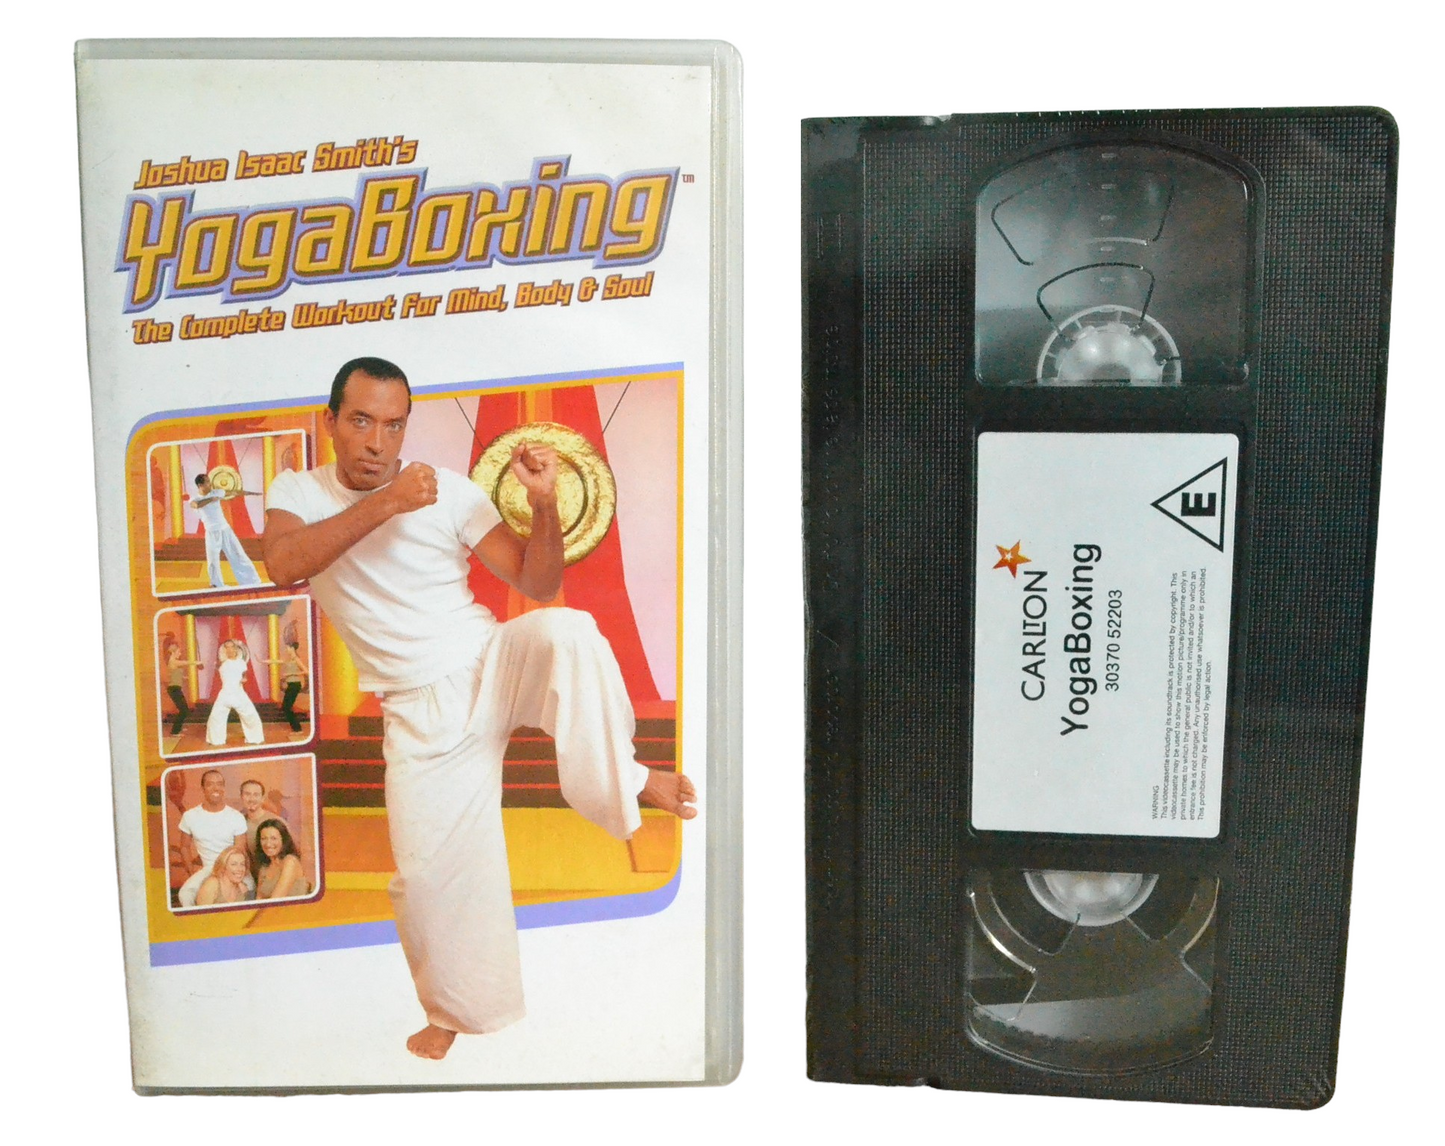 Yoga Boxing - Joshua Isaac Smith - Carliton - 30370 52203 - Brand New Sealed - Pal - VHS-